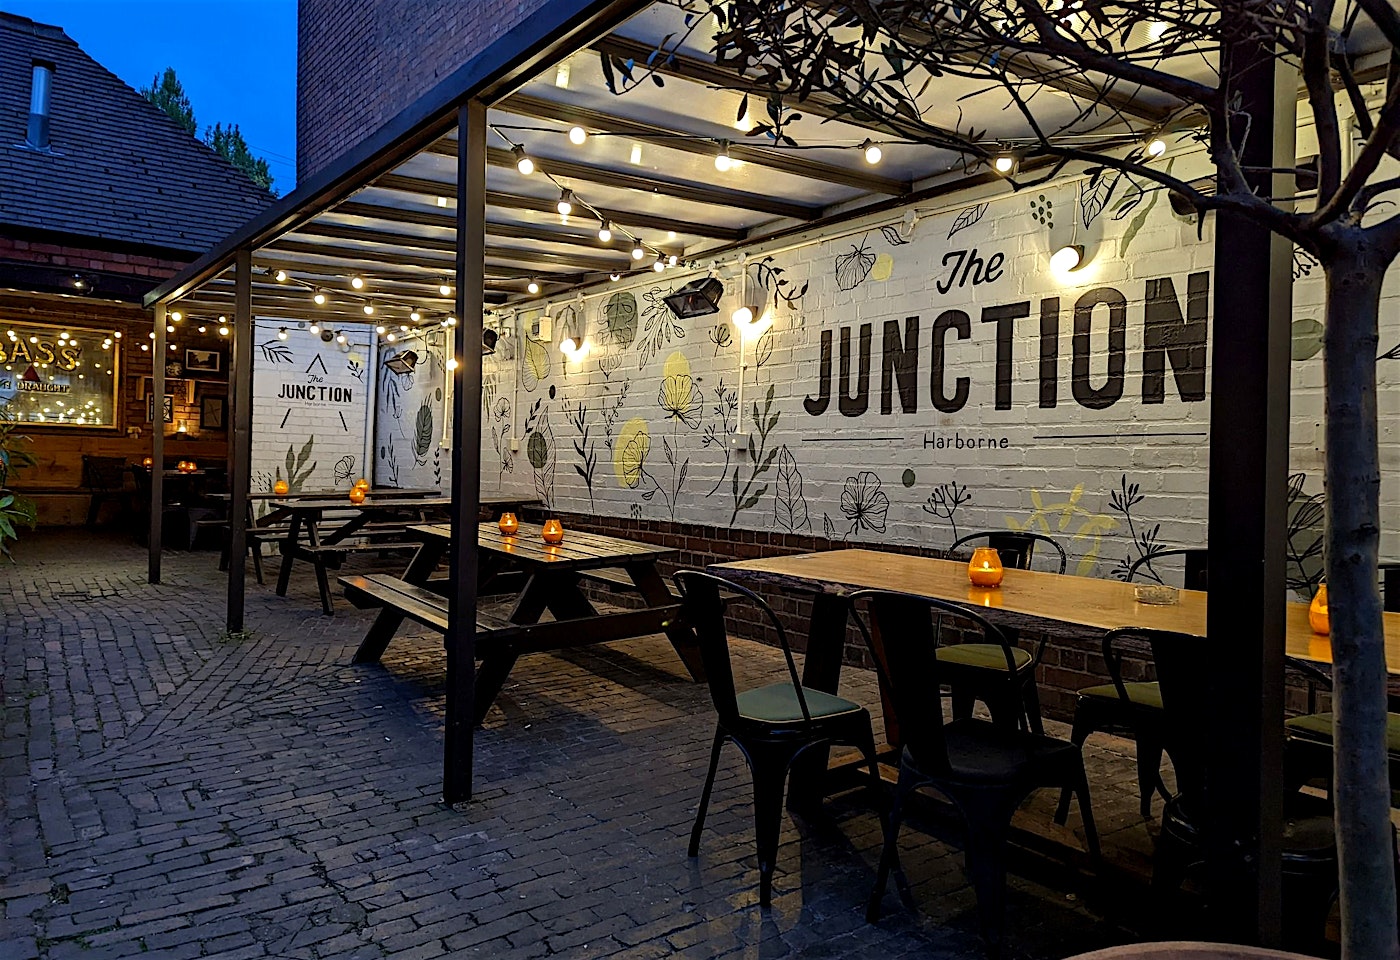 The junction birmingham outdoor bar